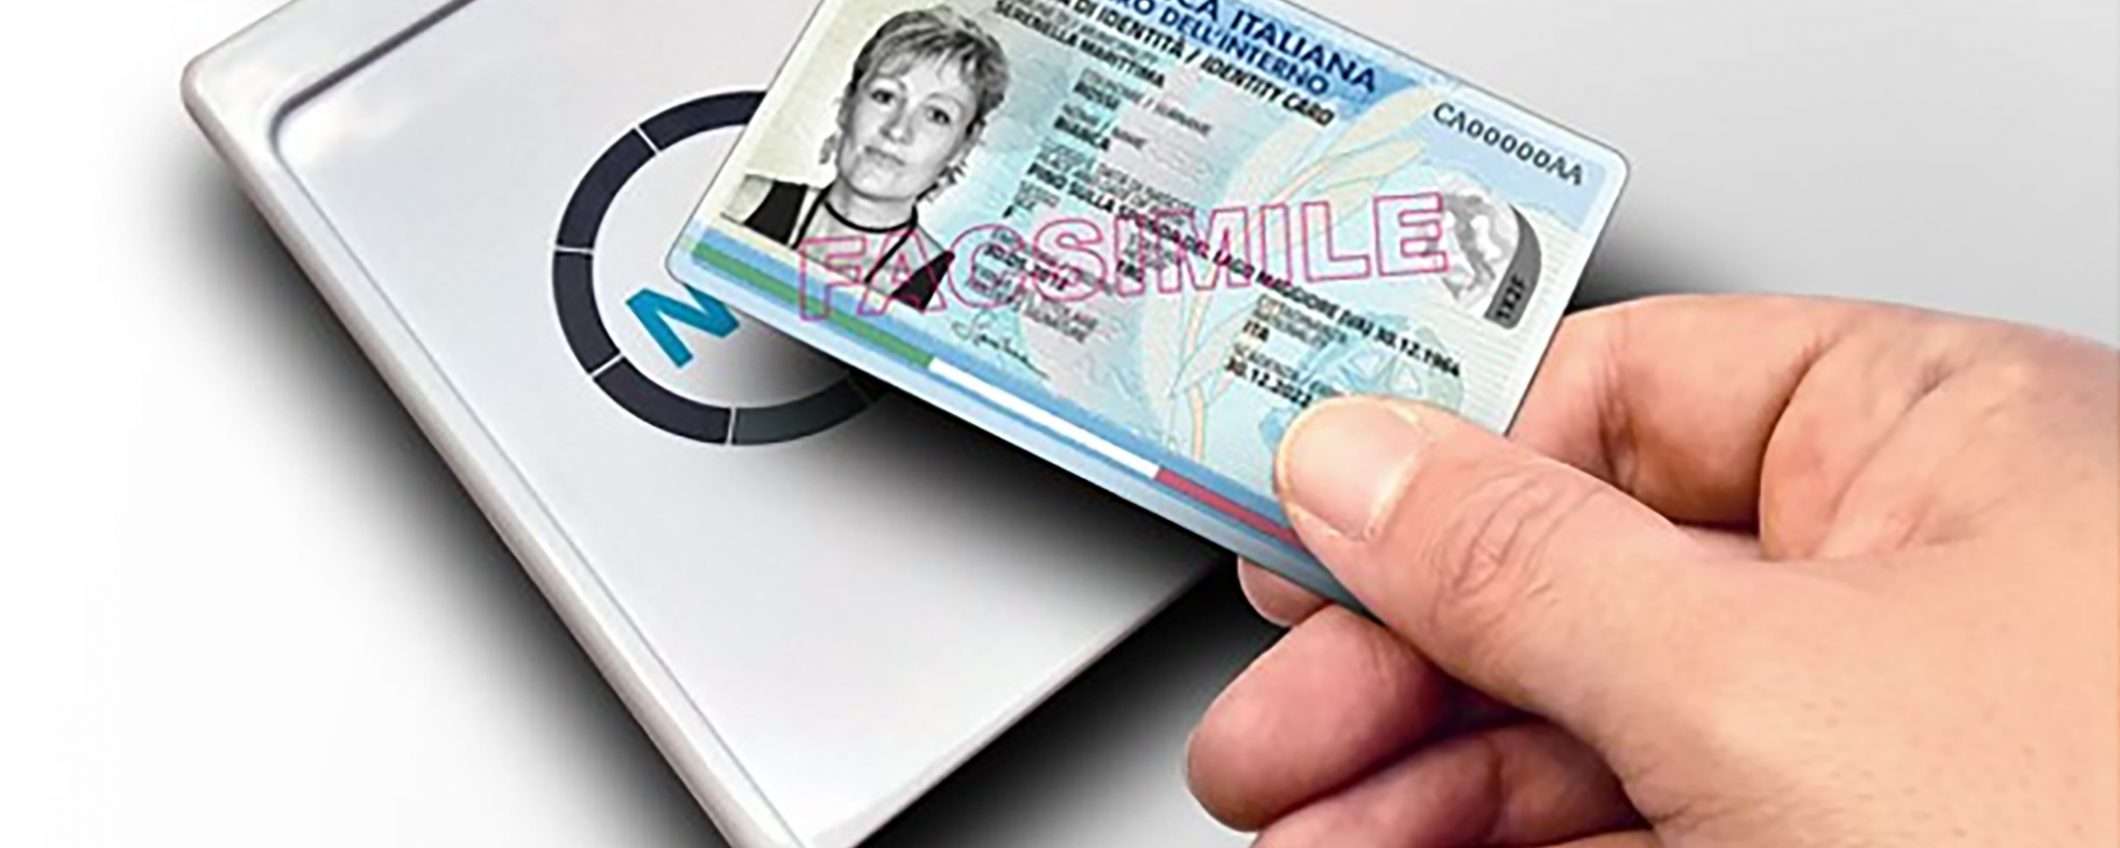 Lettore RFID CONTACTLESS per l'uso della Carta d'Identità Elettronica (CIE)